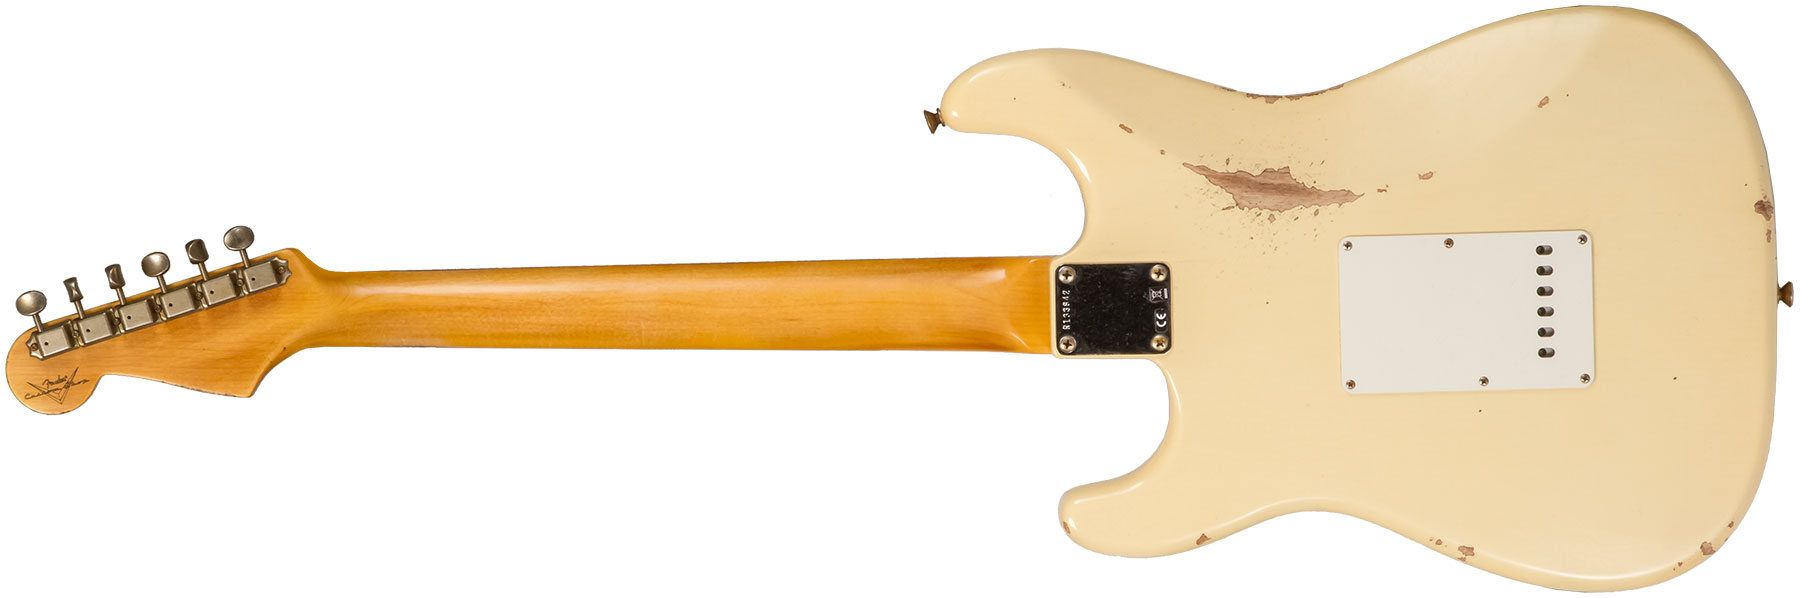 Fender Custom Shop Strat 1959 3s Trem Rw #r133842 - Relic Antique Vintage White - Elektrische gitaar in Str-vorm - Variation 1